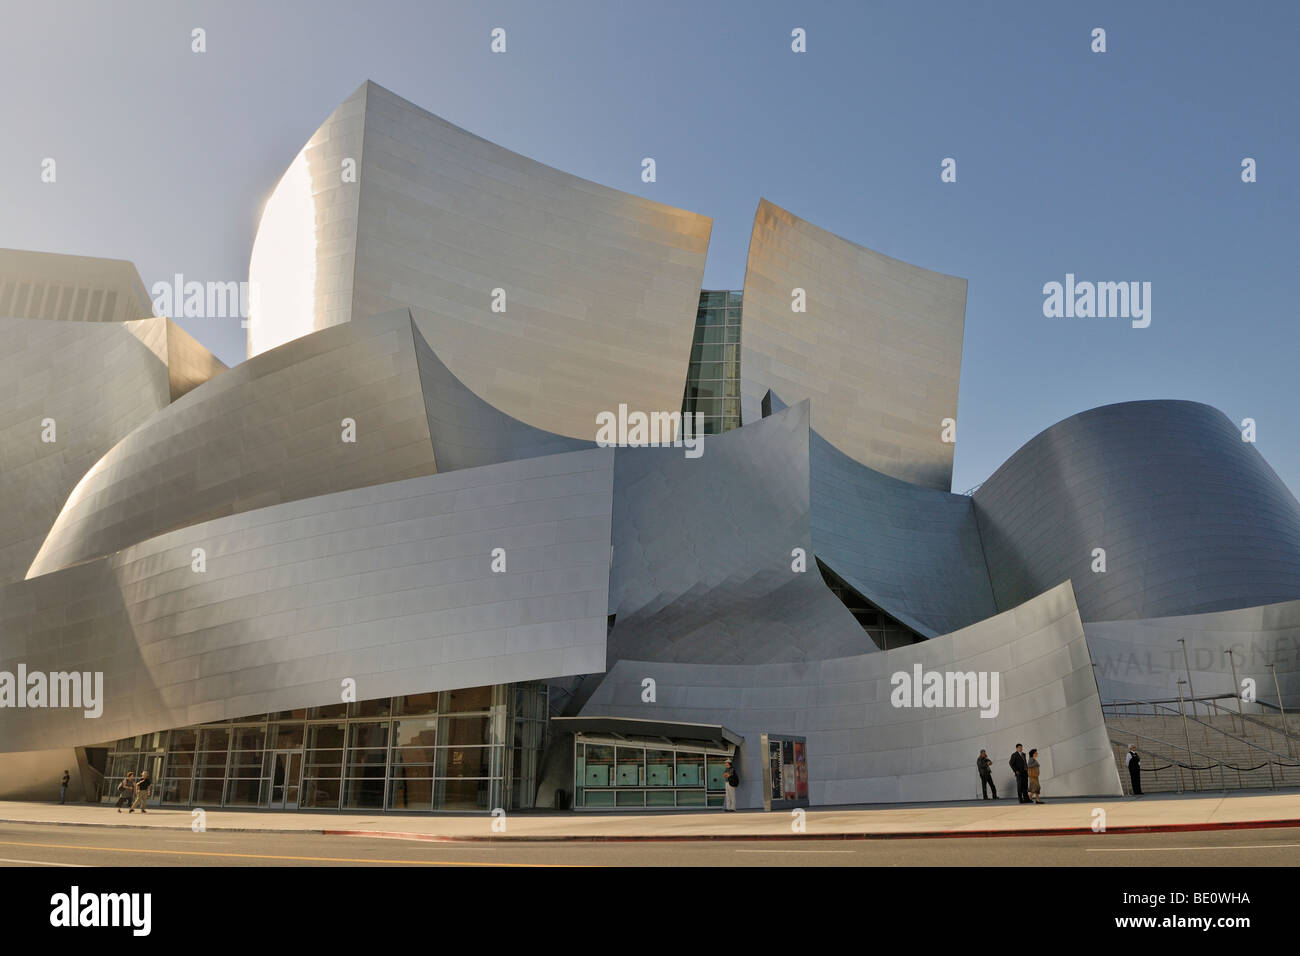 Walt Disney Concert Hall, vue partielle, l'architecte Frank O. Gehry, Los Angeles, Californie, USA Banque D'Images